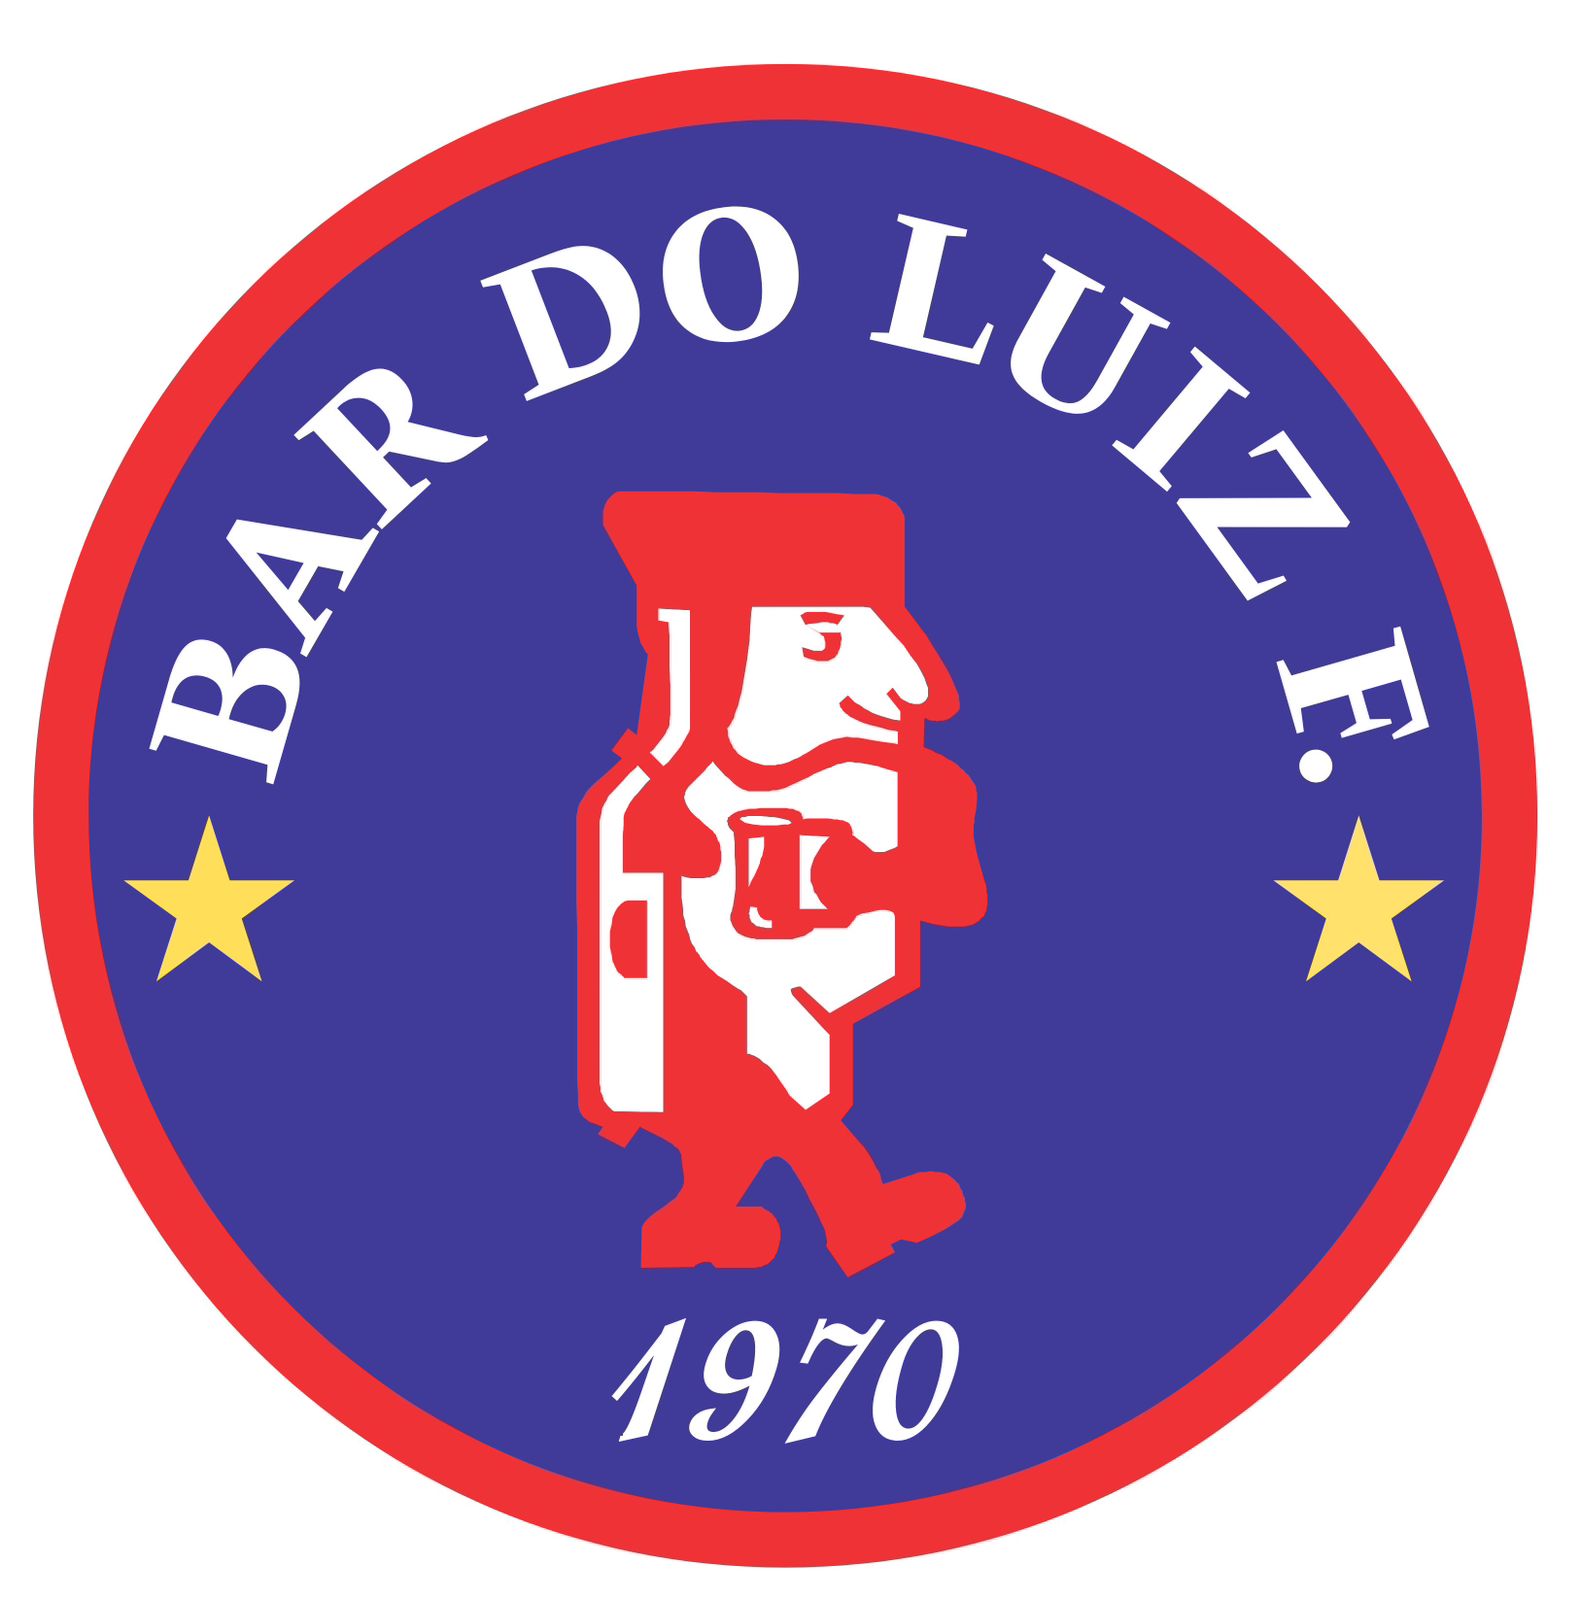 Bar do Luiz Fernandes